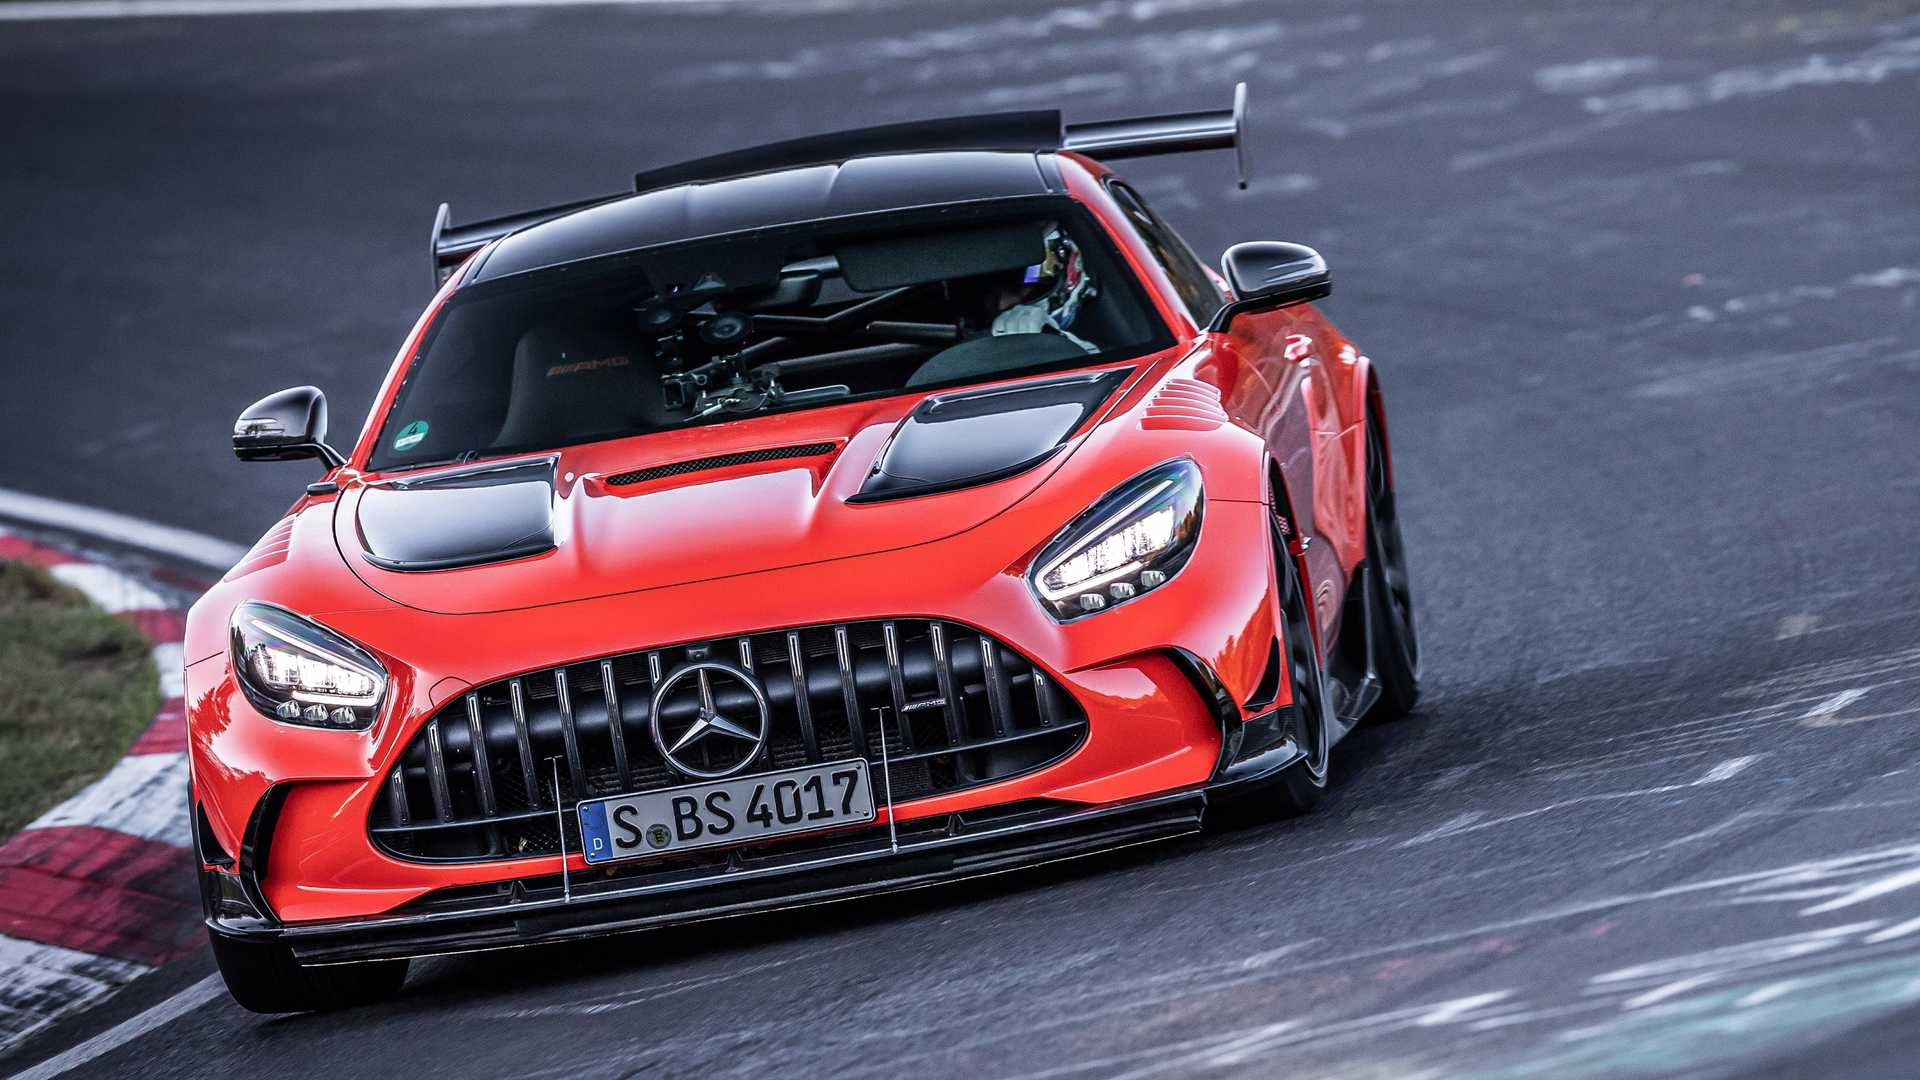 Դիտեք Mercedes-AMG GT Black Series-ը, որը գերազանցում է արագության ռեկորդը Գերմանիայի Նյուրբուրգրինգում